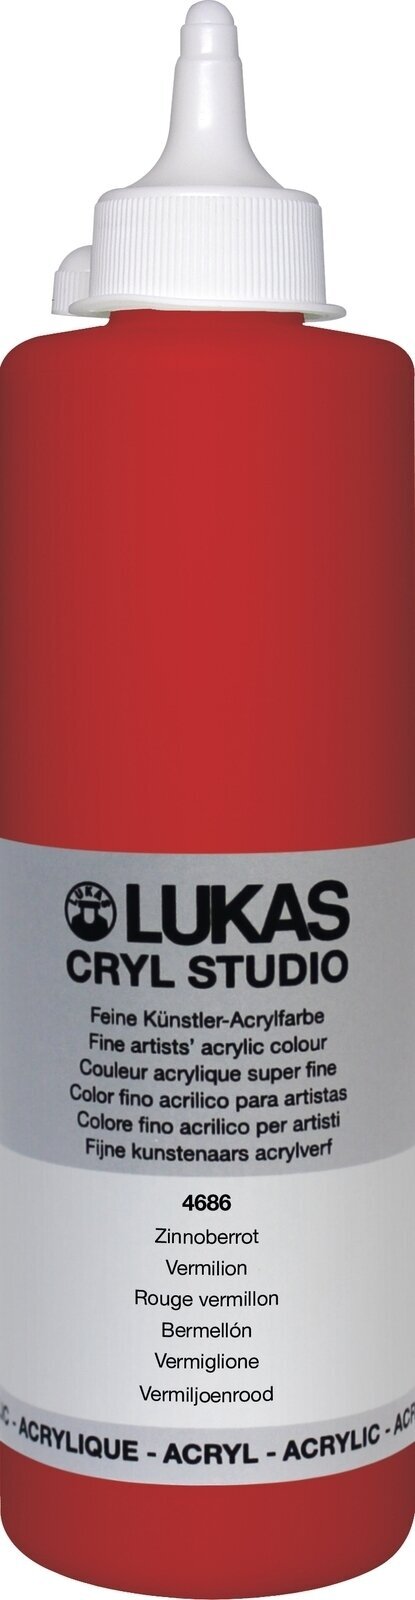 Peinture acrylique Lukas Cryl Studio Acrylic Paint Plastic Bottle Peinture acrylique Vermilion 500 ml 1 pc